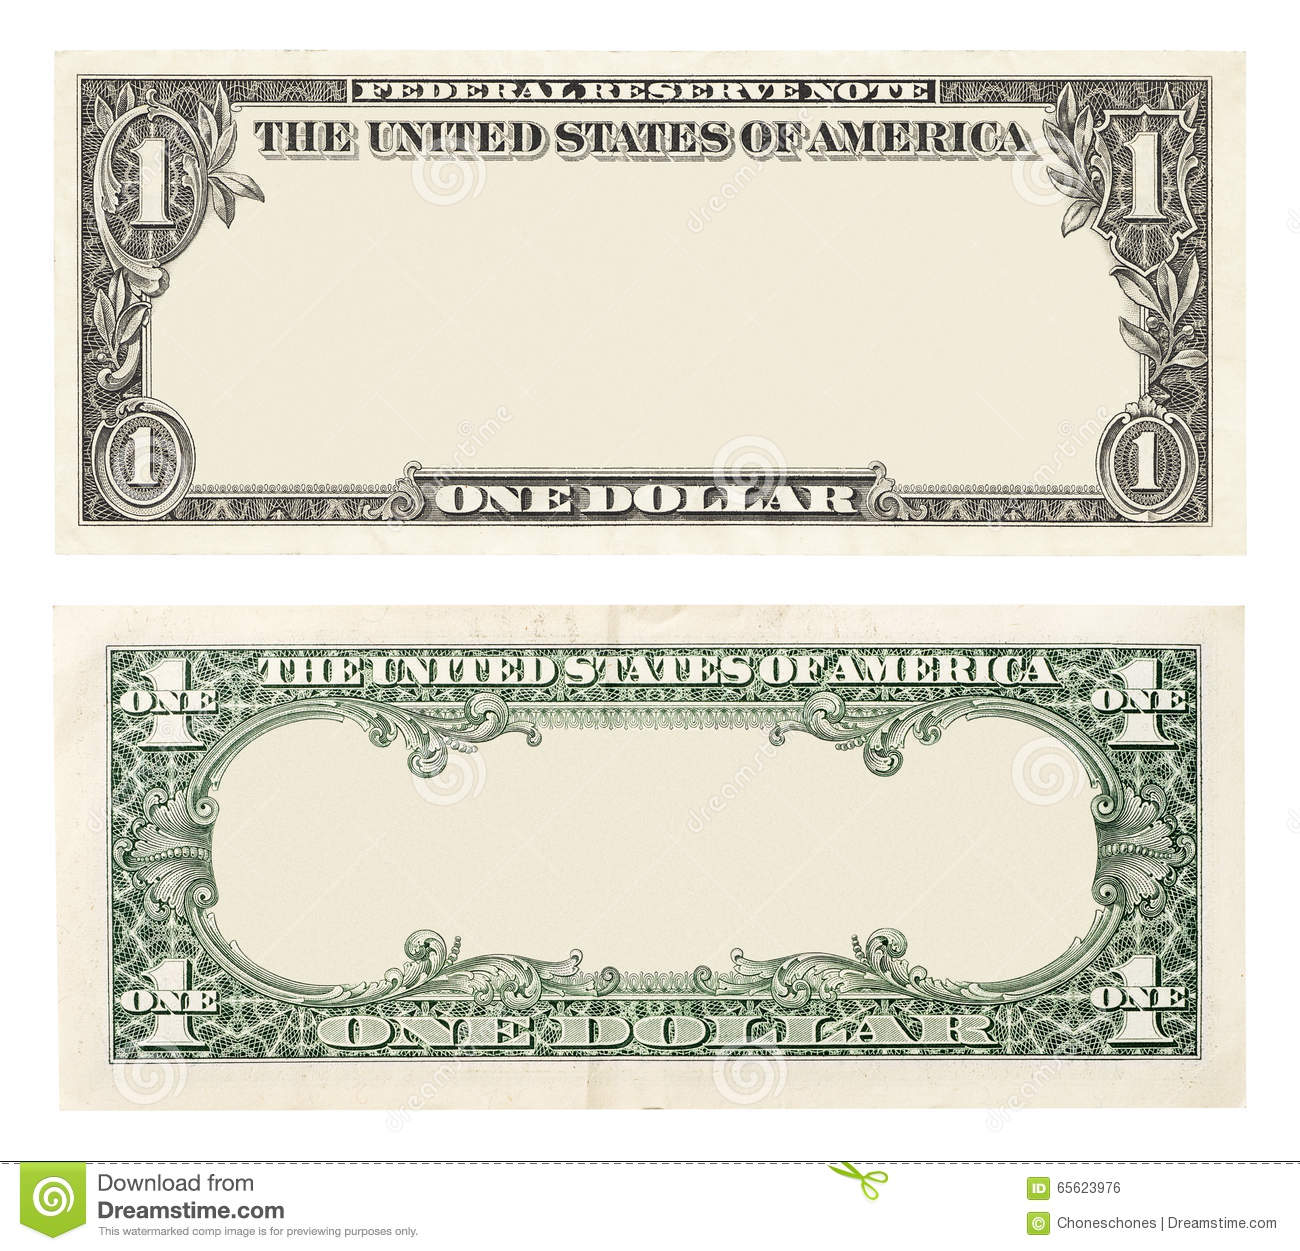 dollar bill serial number lookup value